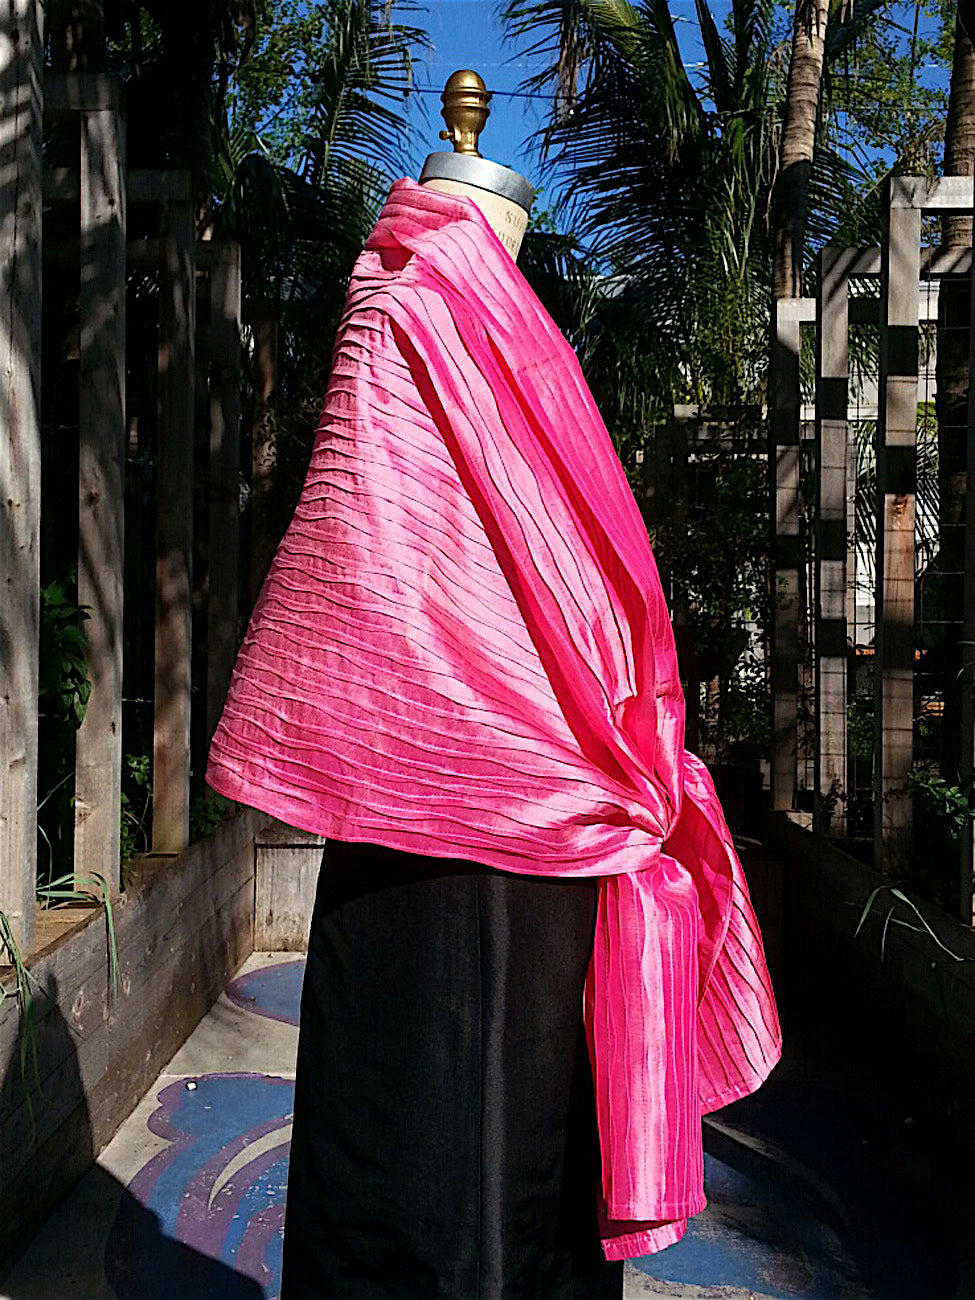 Thai Silk Pintuck Pleated Shawl Precious Pink